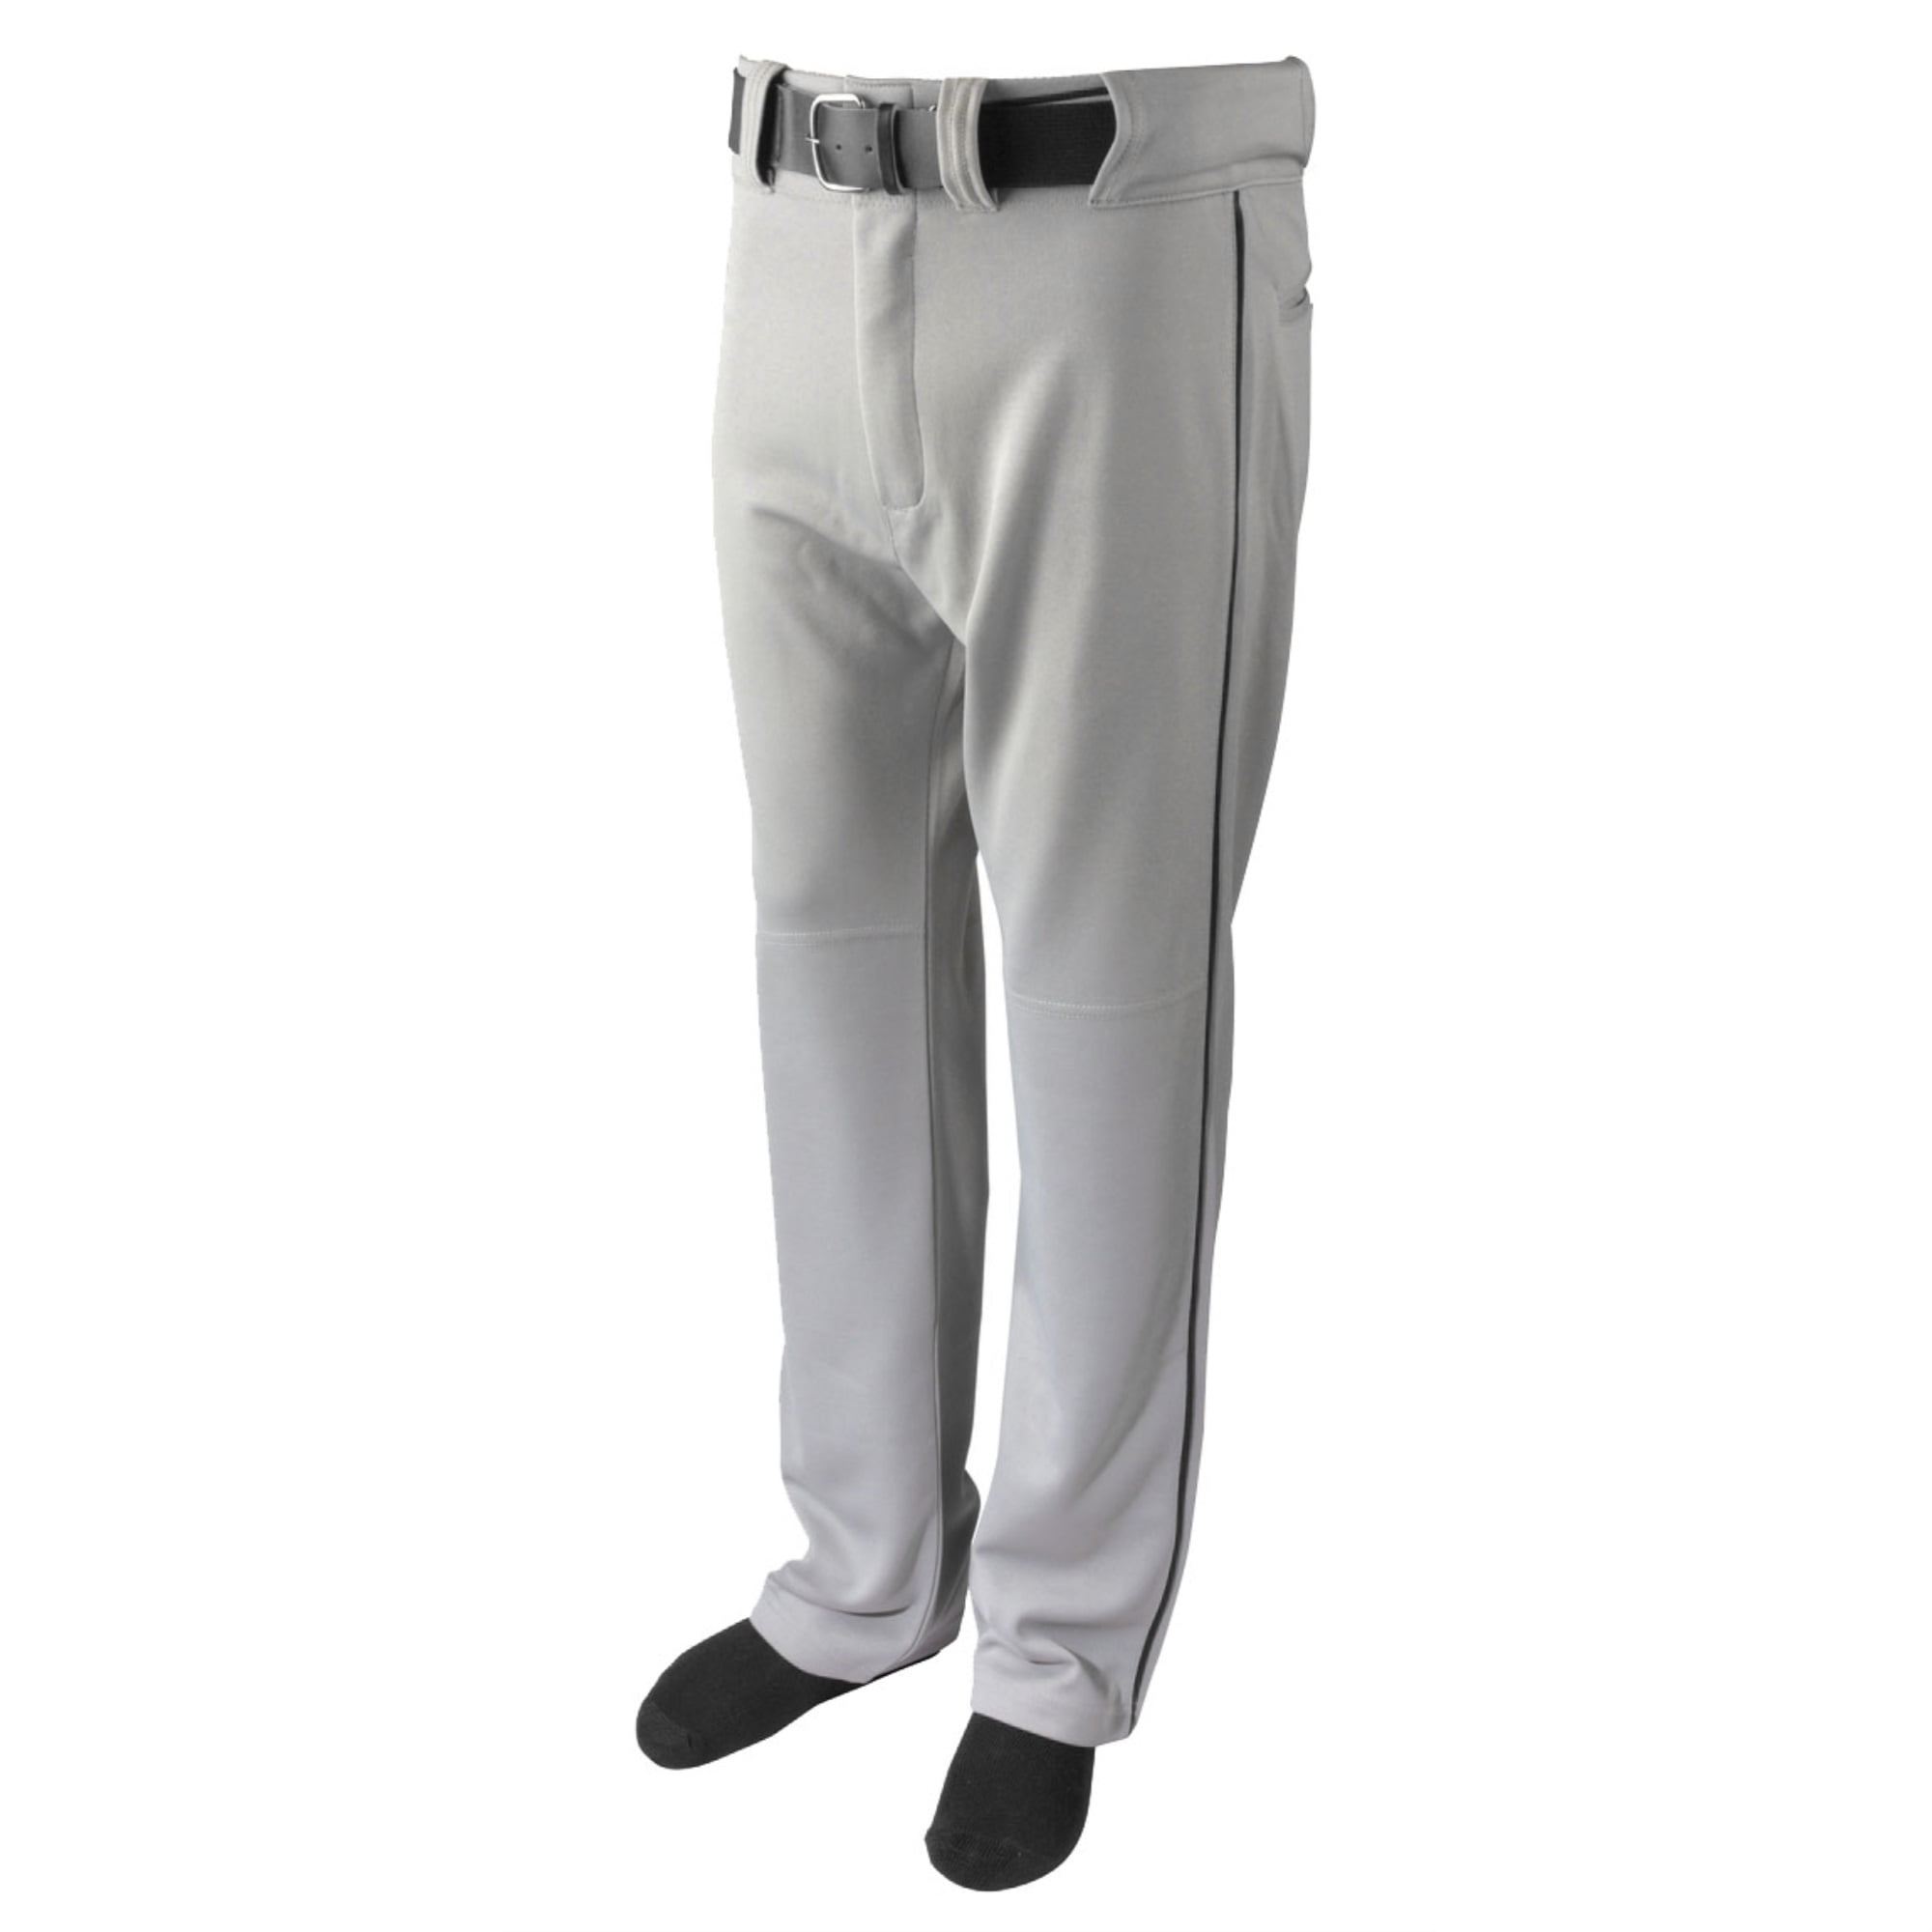 Martin Sports YOUTH Baseball / Softball Belt Loop GREY Pants with BLACK  Piping 